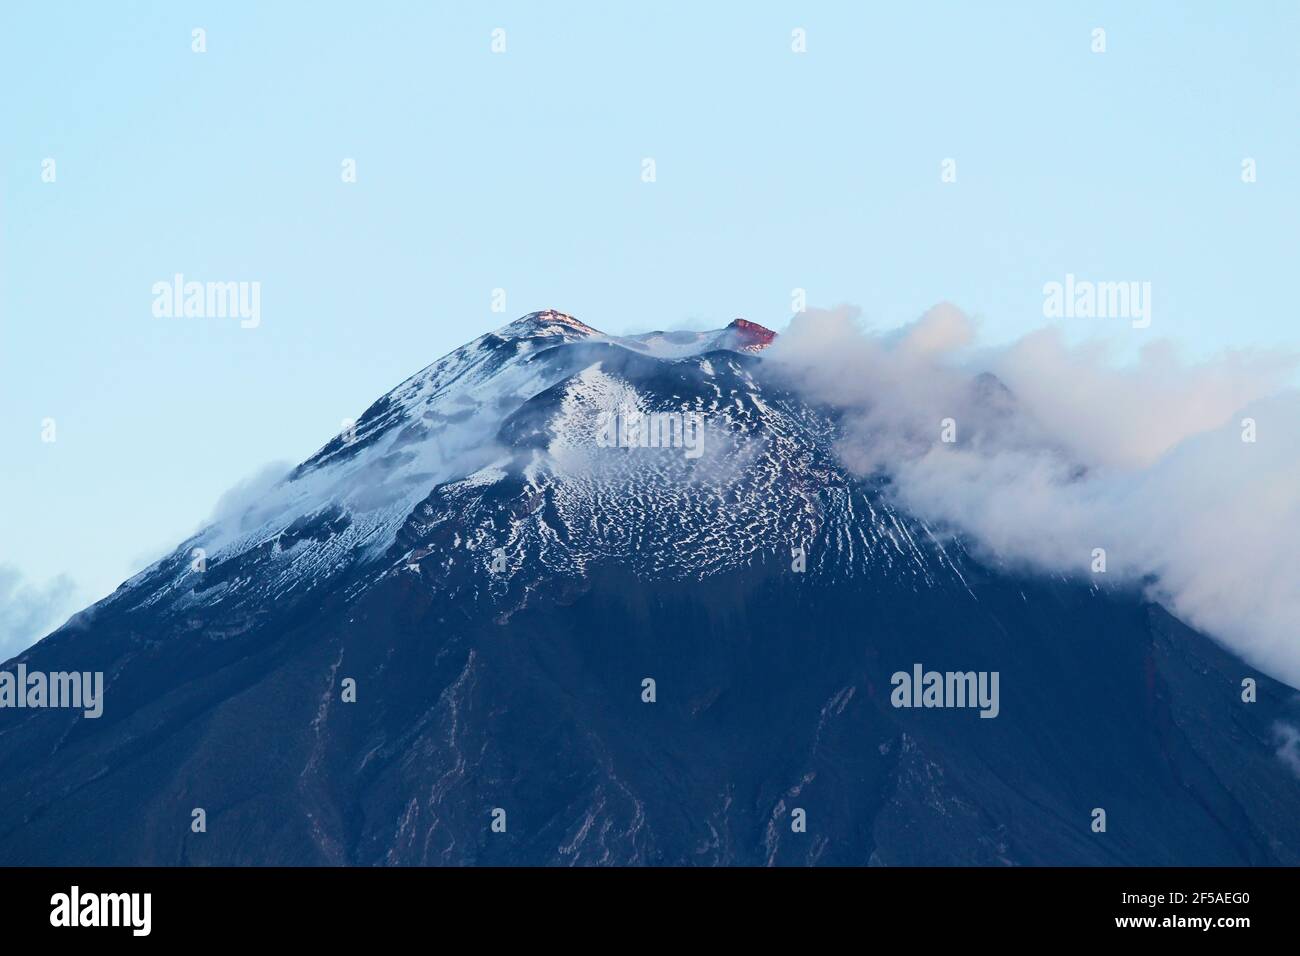 Tungurahua Volcano Summit with Snow at Dusk Stock Photo